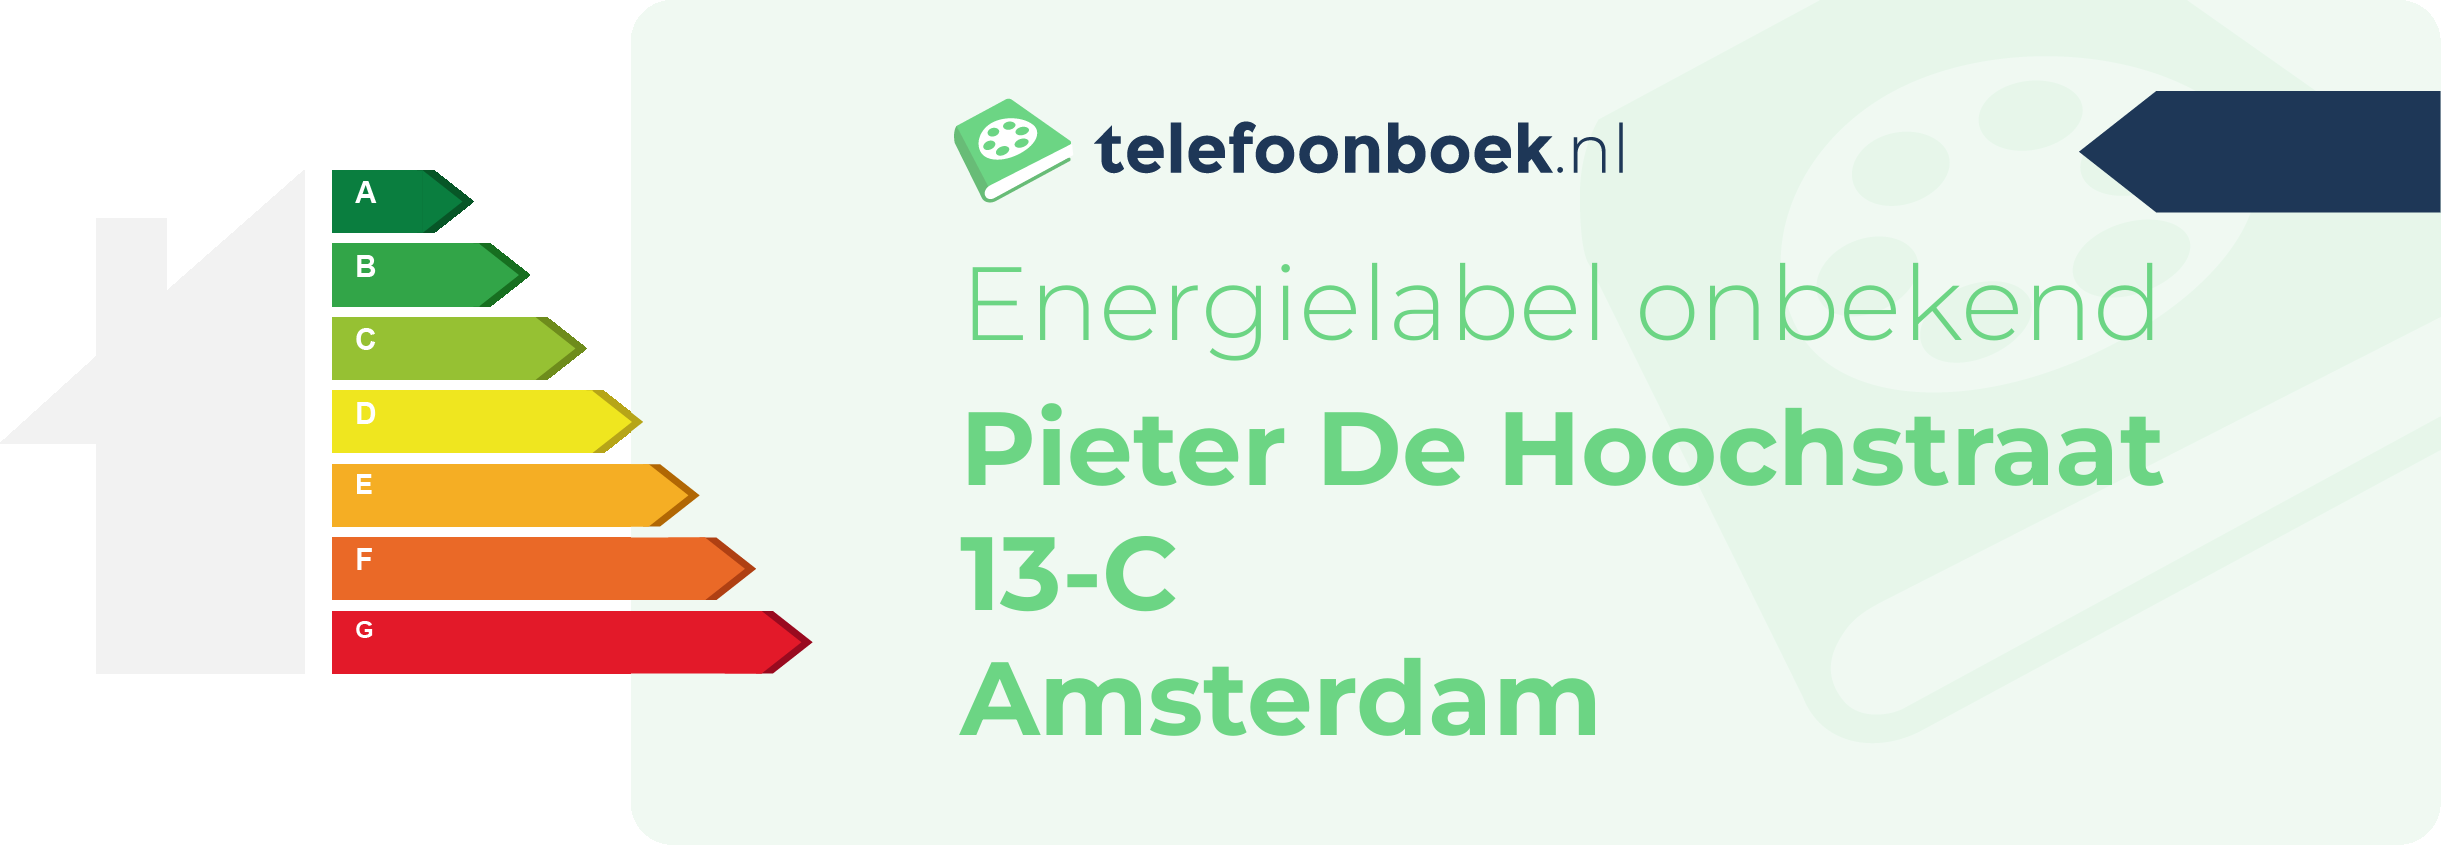 Energielabel Pieter De Hoochstraat 13-C Amsterdam